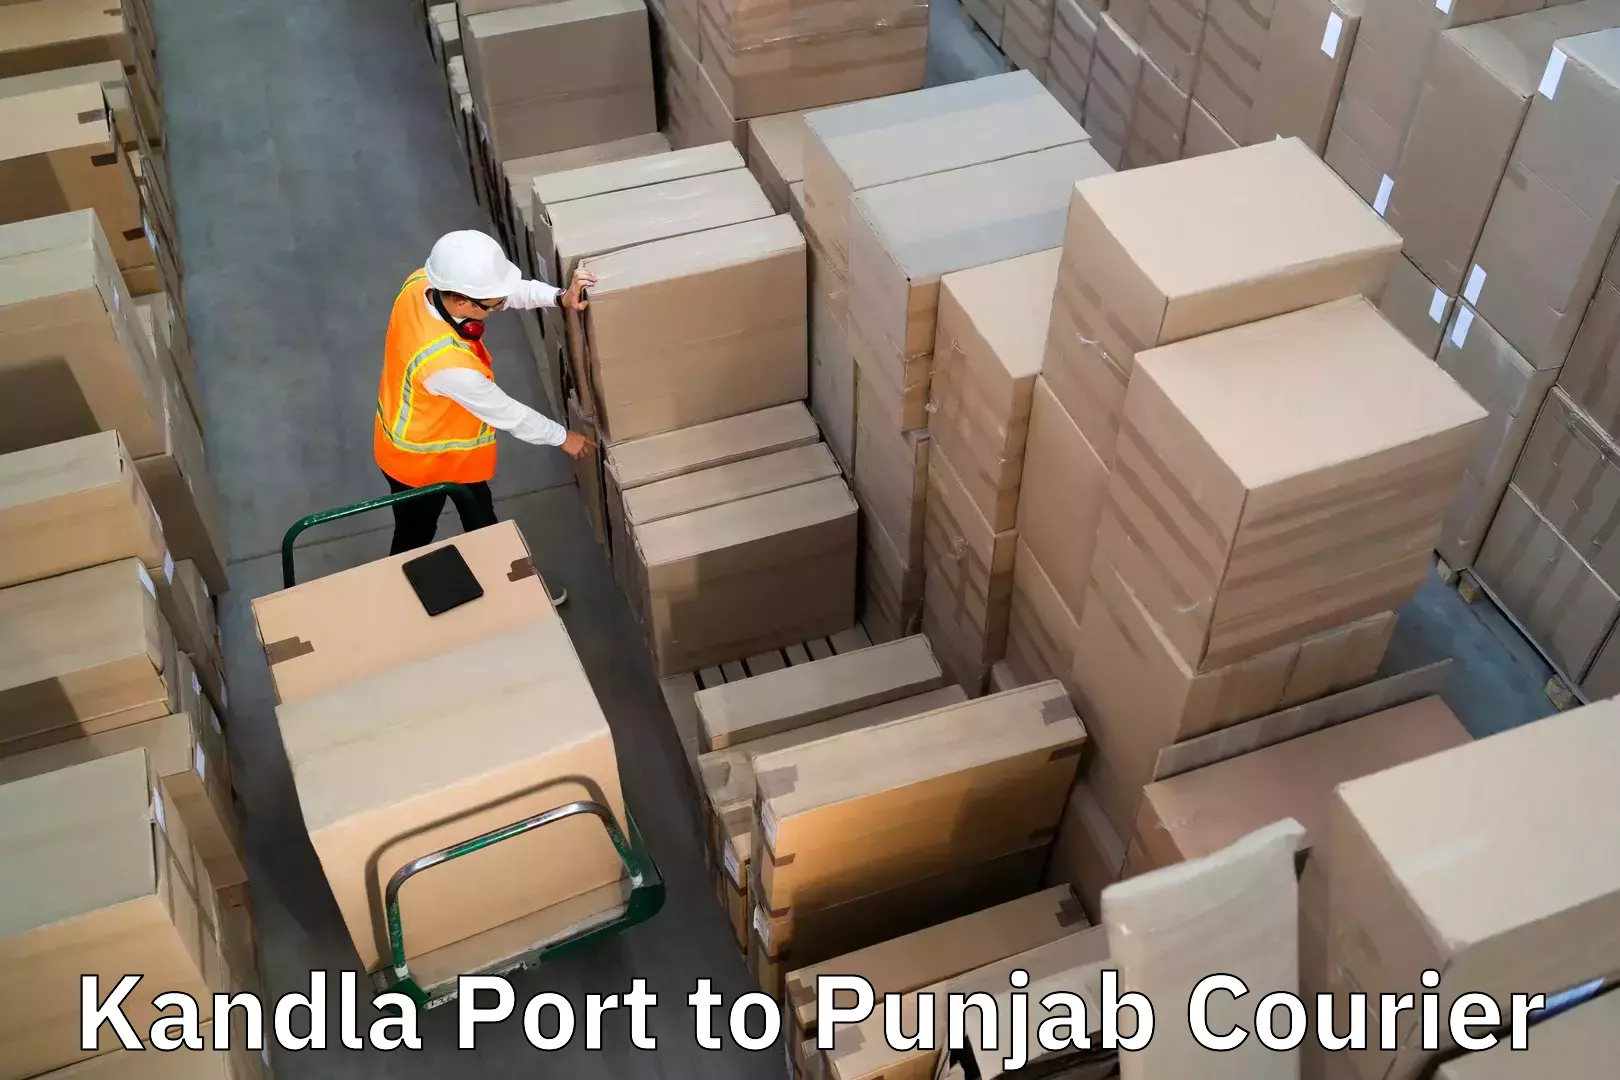 Luggage forwarding service Kandla Port to Dhilwan